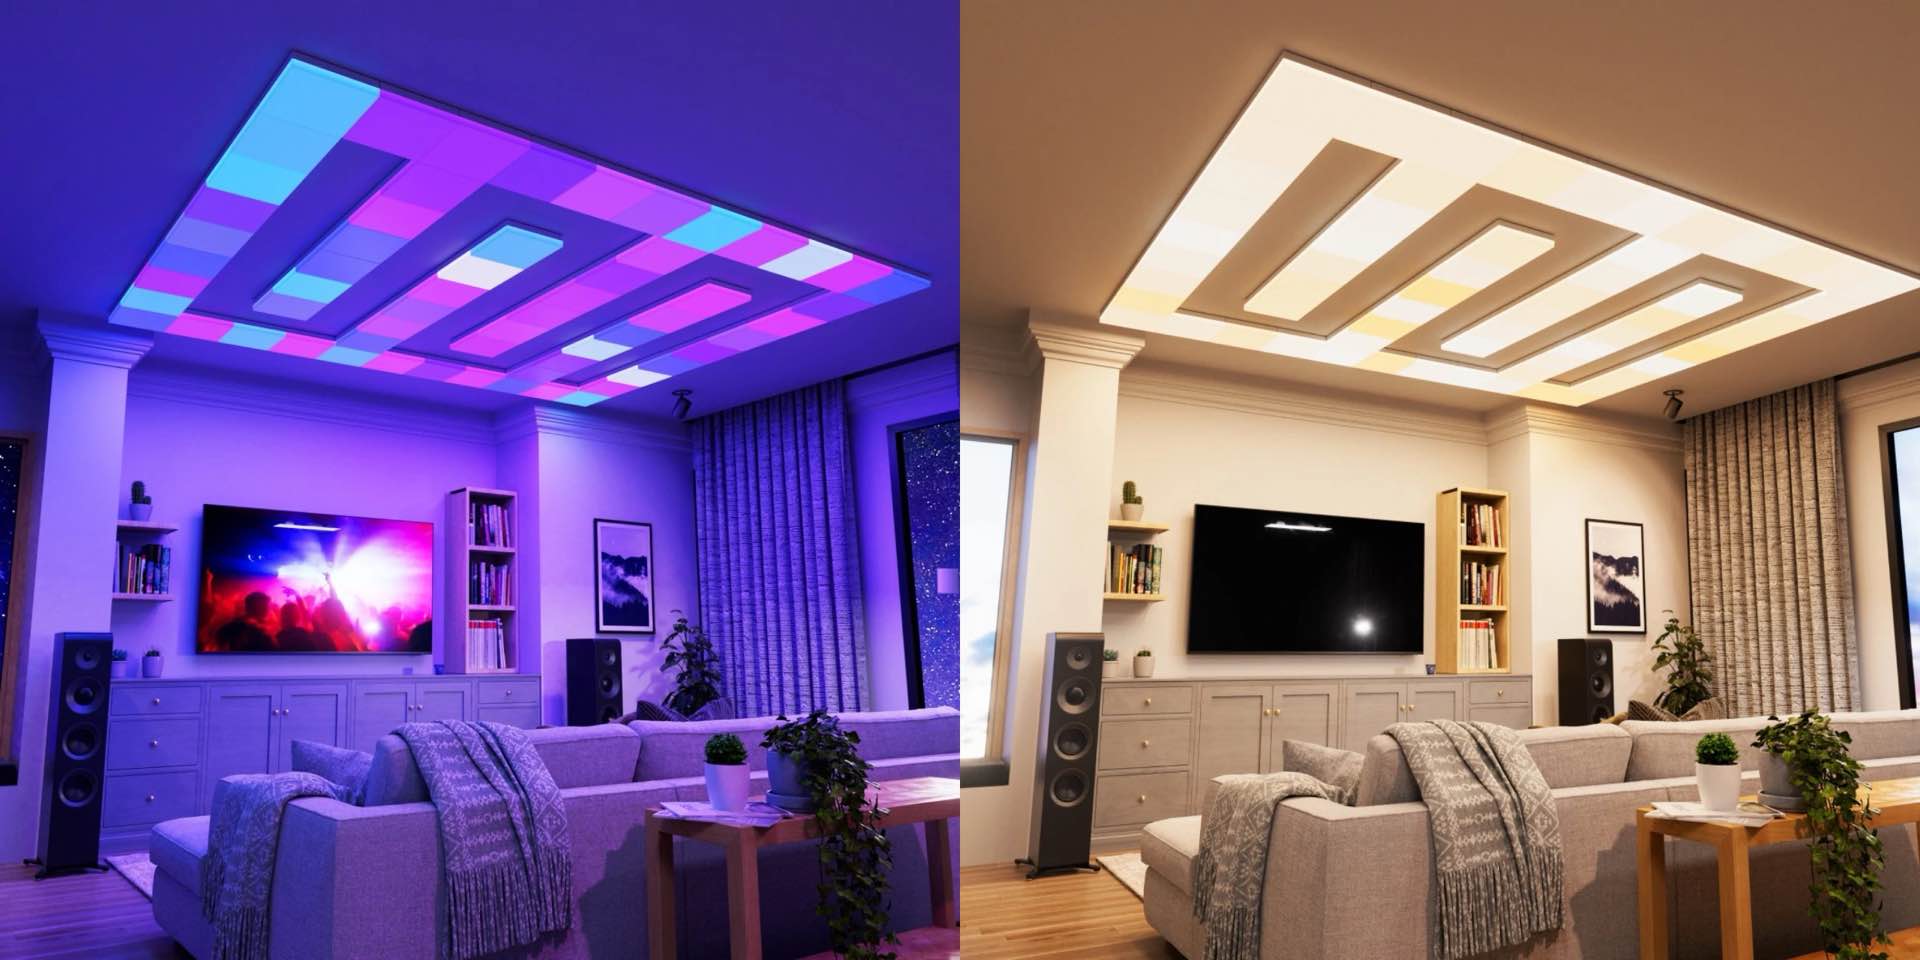 nanoleaf-skylight-smart-ceiling-light-panels